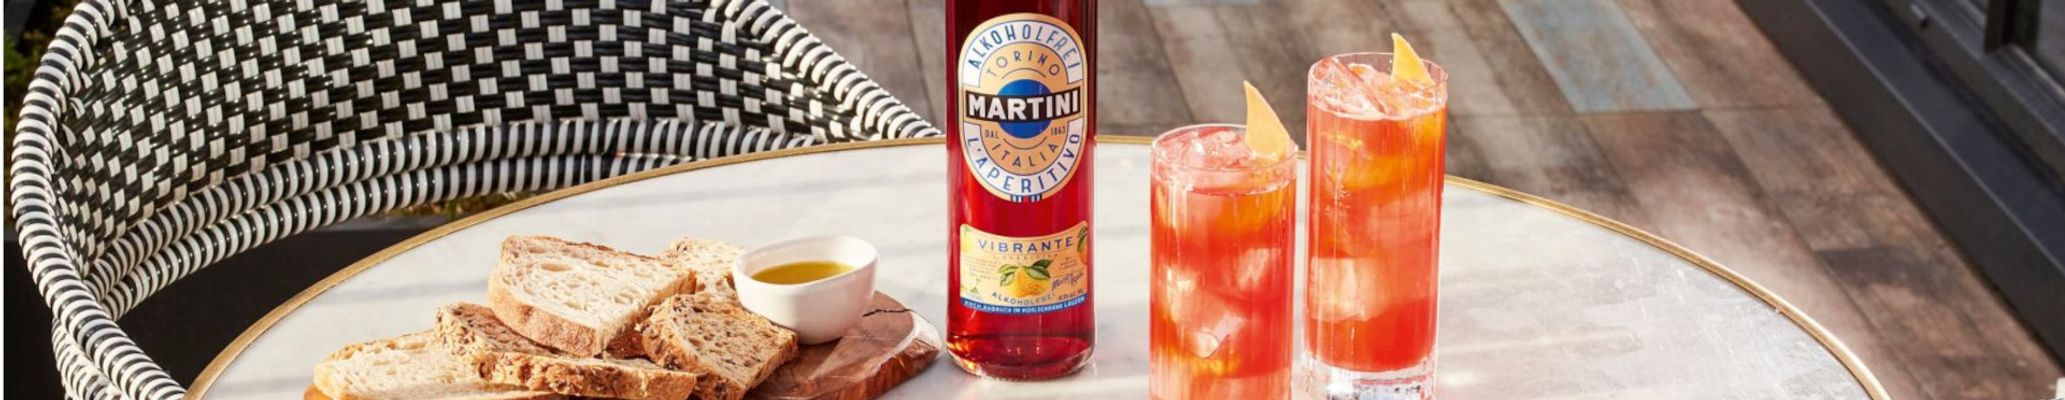 Martini Aperitivo Vibrante alkoholfrei L'Aperitivo